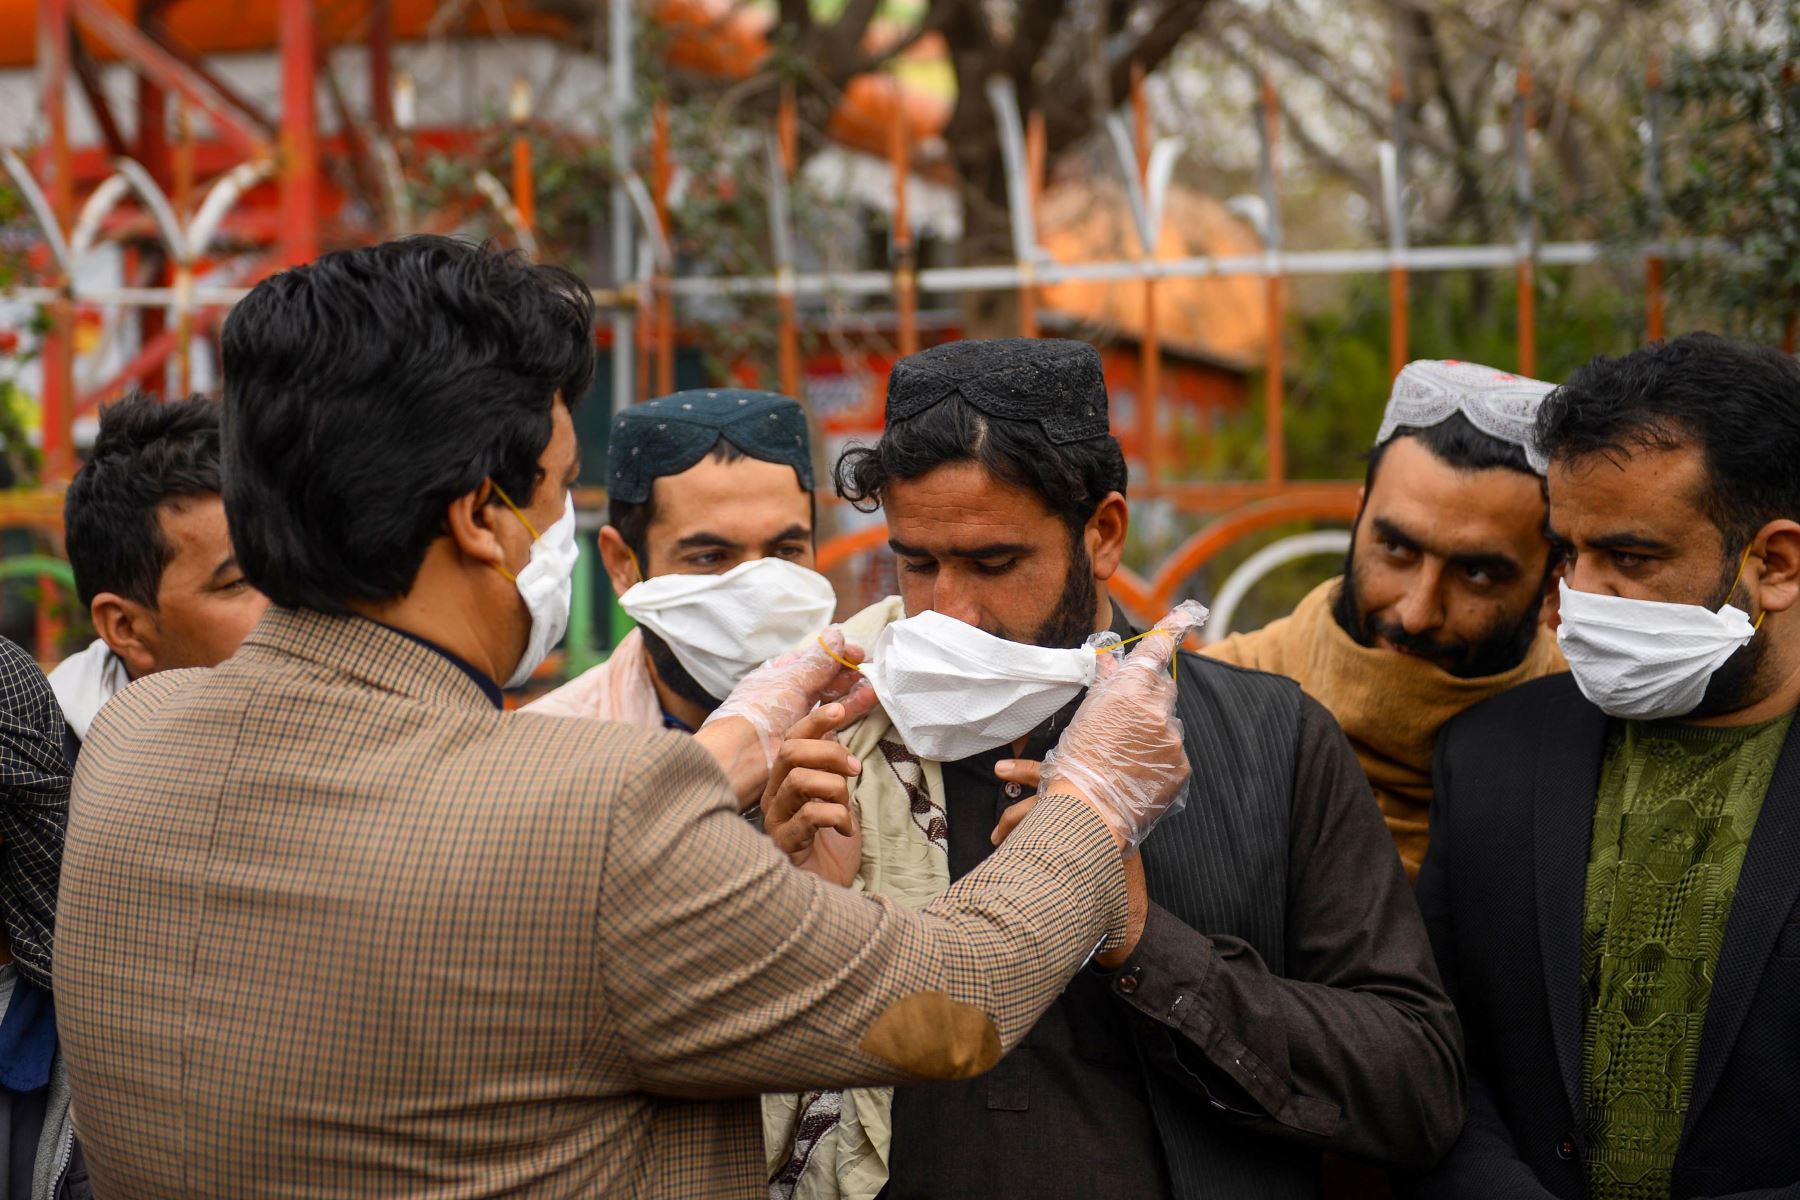 Un voluntario entrega máscaras faciales gratuitas a las personas como medida preventiva contra la propagación del coronavirus COVID-19, en la ciudad de Herat en Pakistán. Foto: AFP